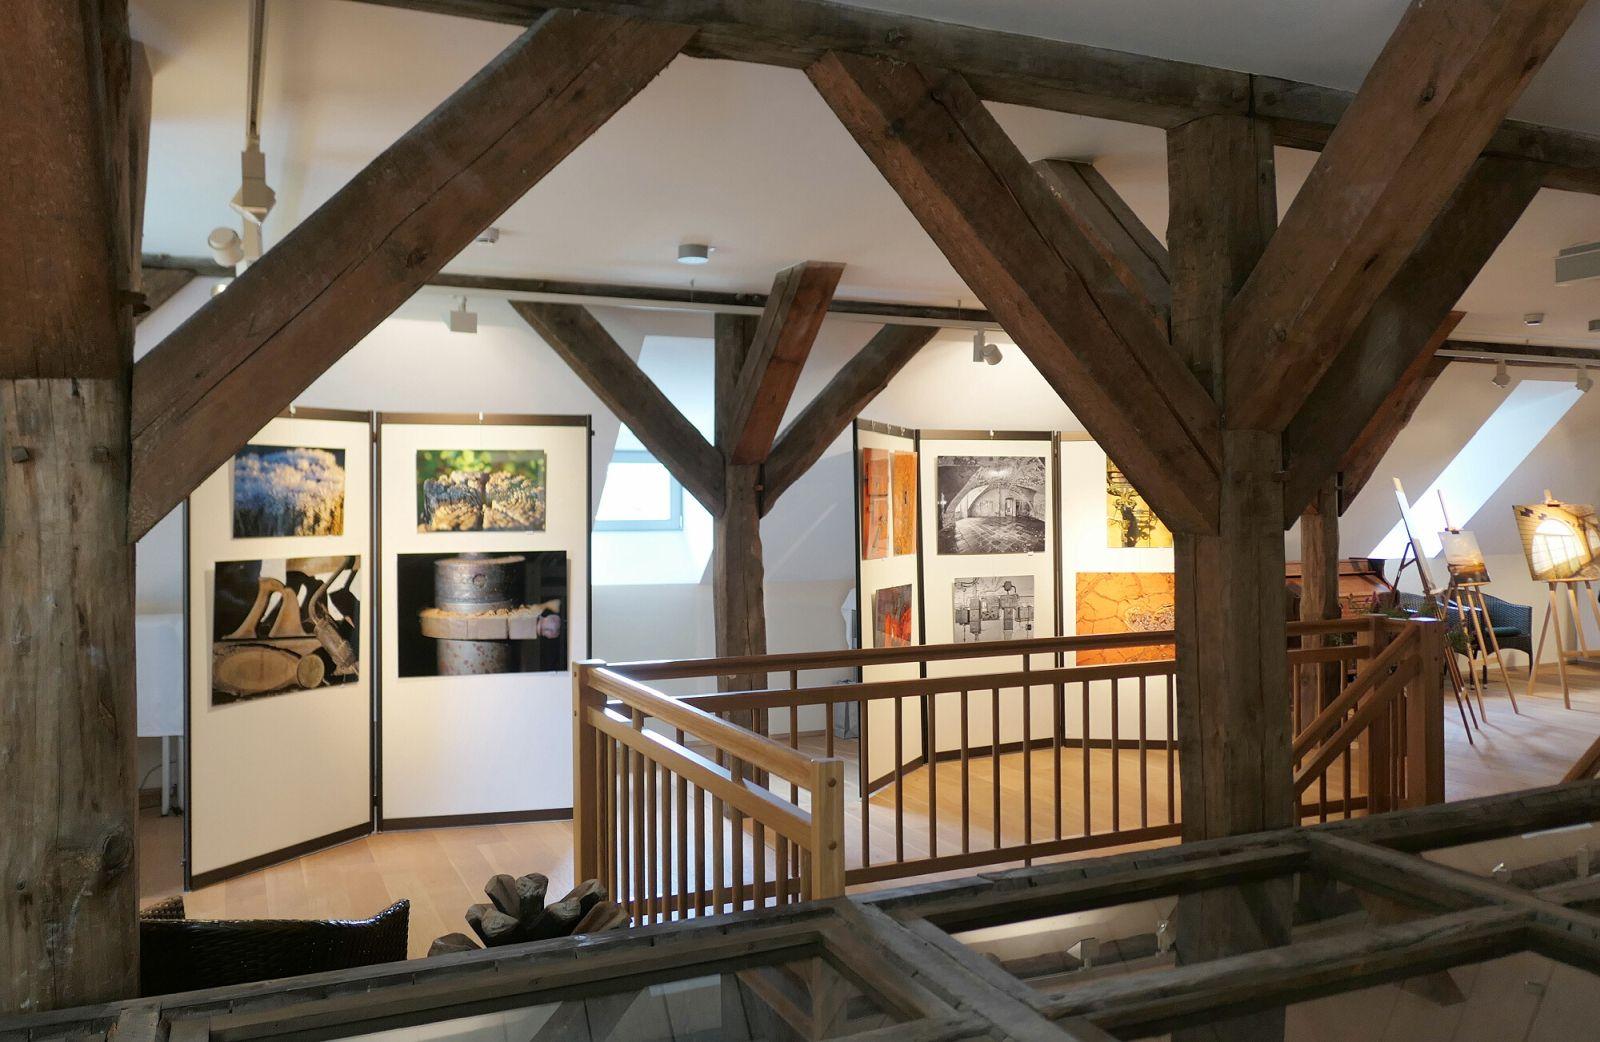 Der Ausstellungsbereich der Darre in Lieberose. Foto: Ingrid Hoberg